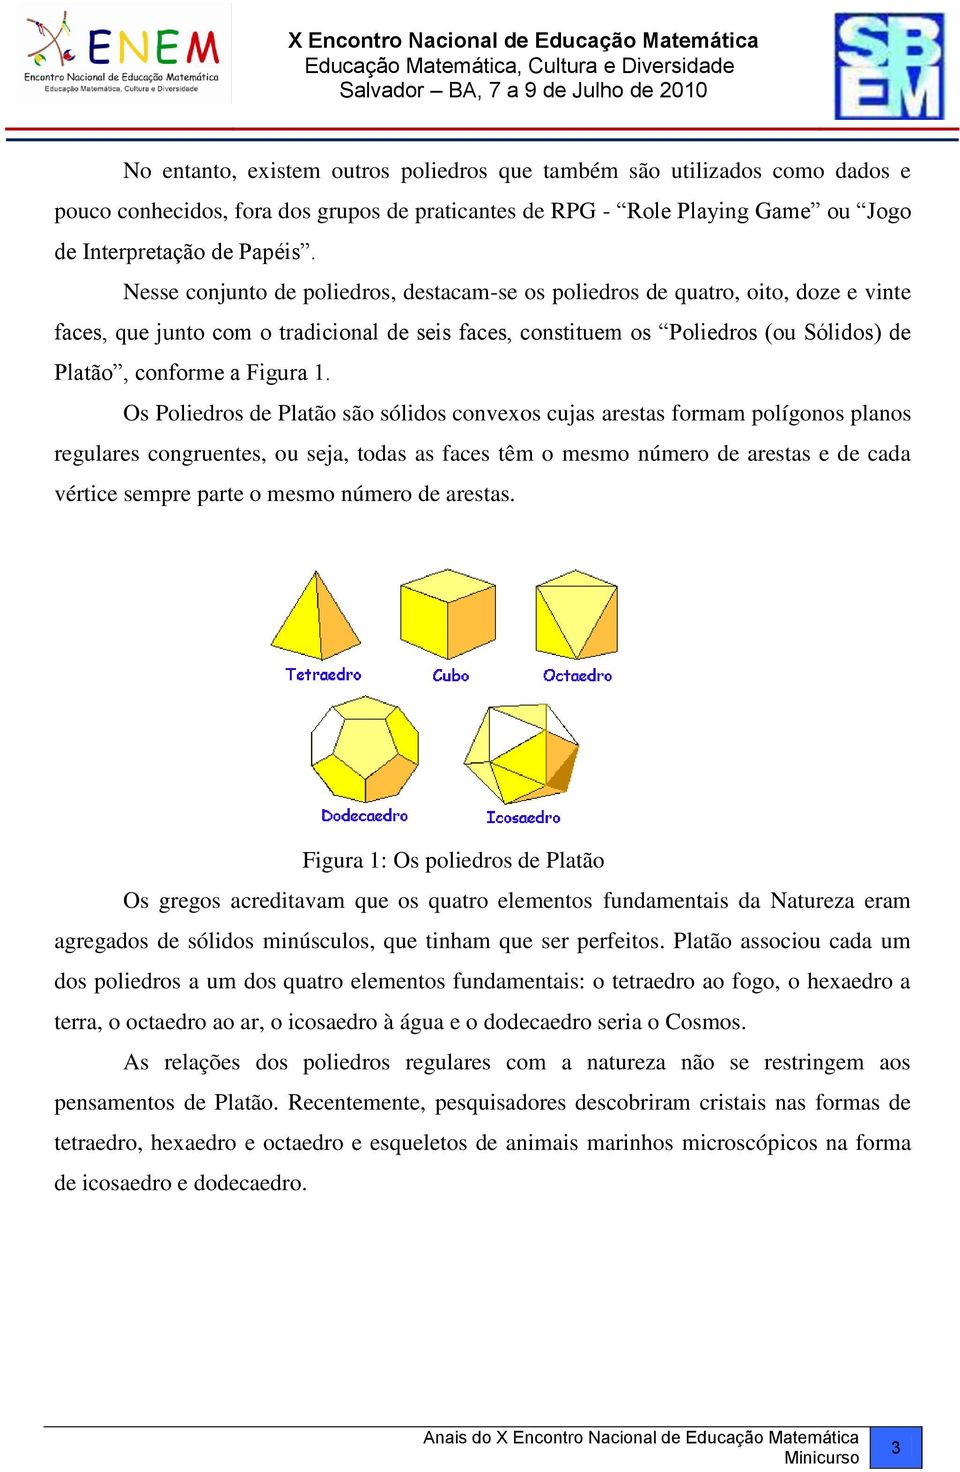 1. Os Poliedros de Platão são sólidos convexos cujas arestas formam polígonos planos regulares congruentes, ou seja, todas as faces têm o mesmo número de arestas e de cada vértice sempre parte o